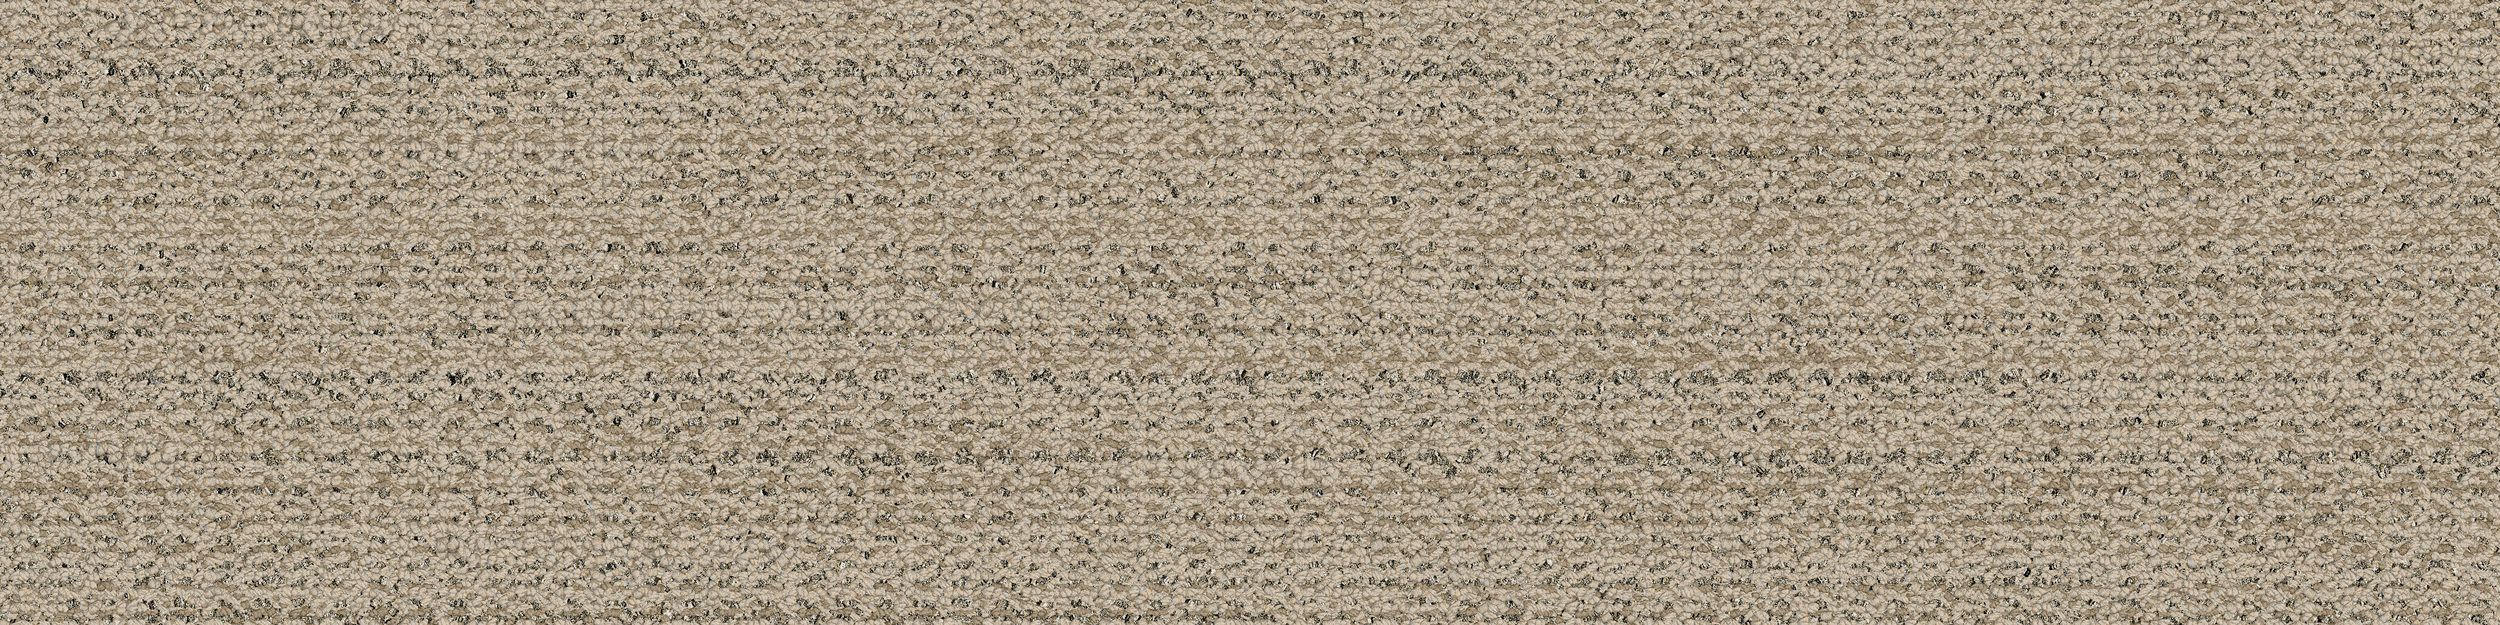 WW870 Carpet Tile In Raffia Weft imagen número 2